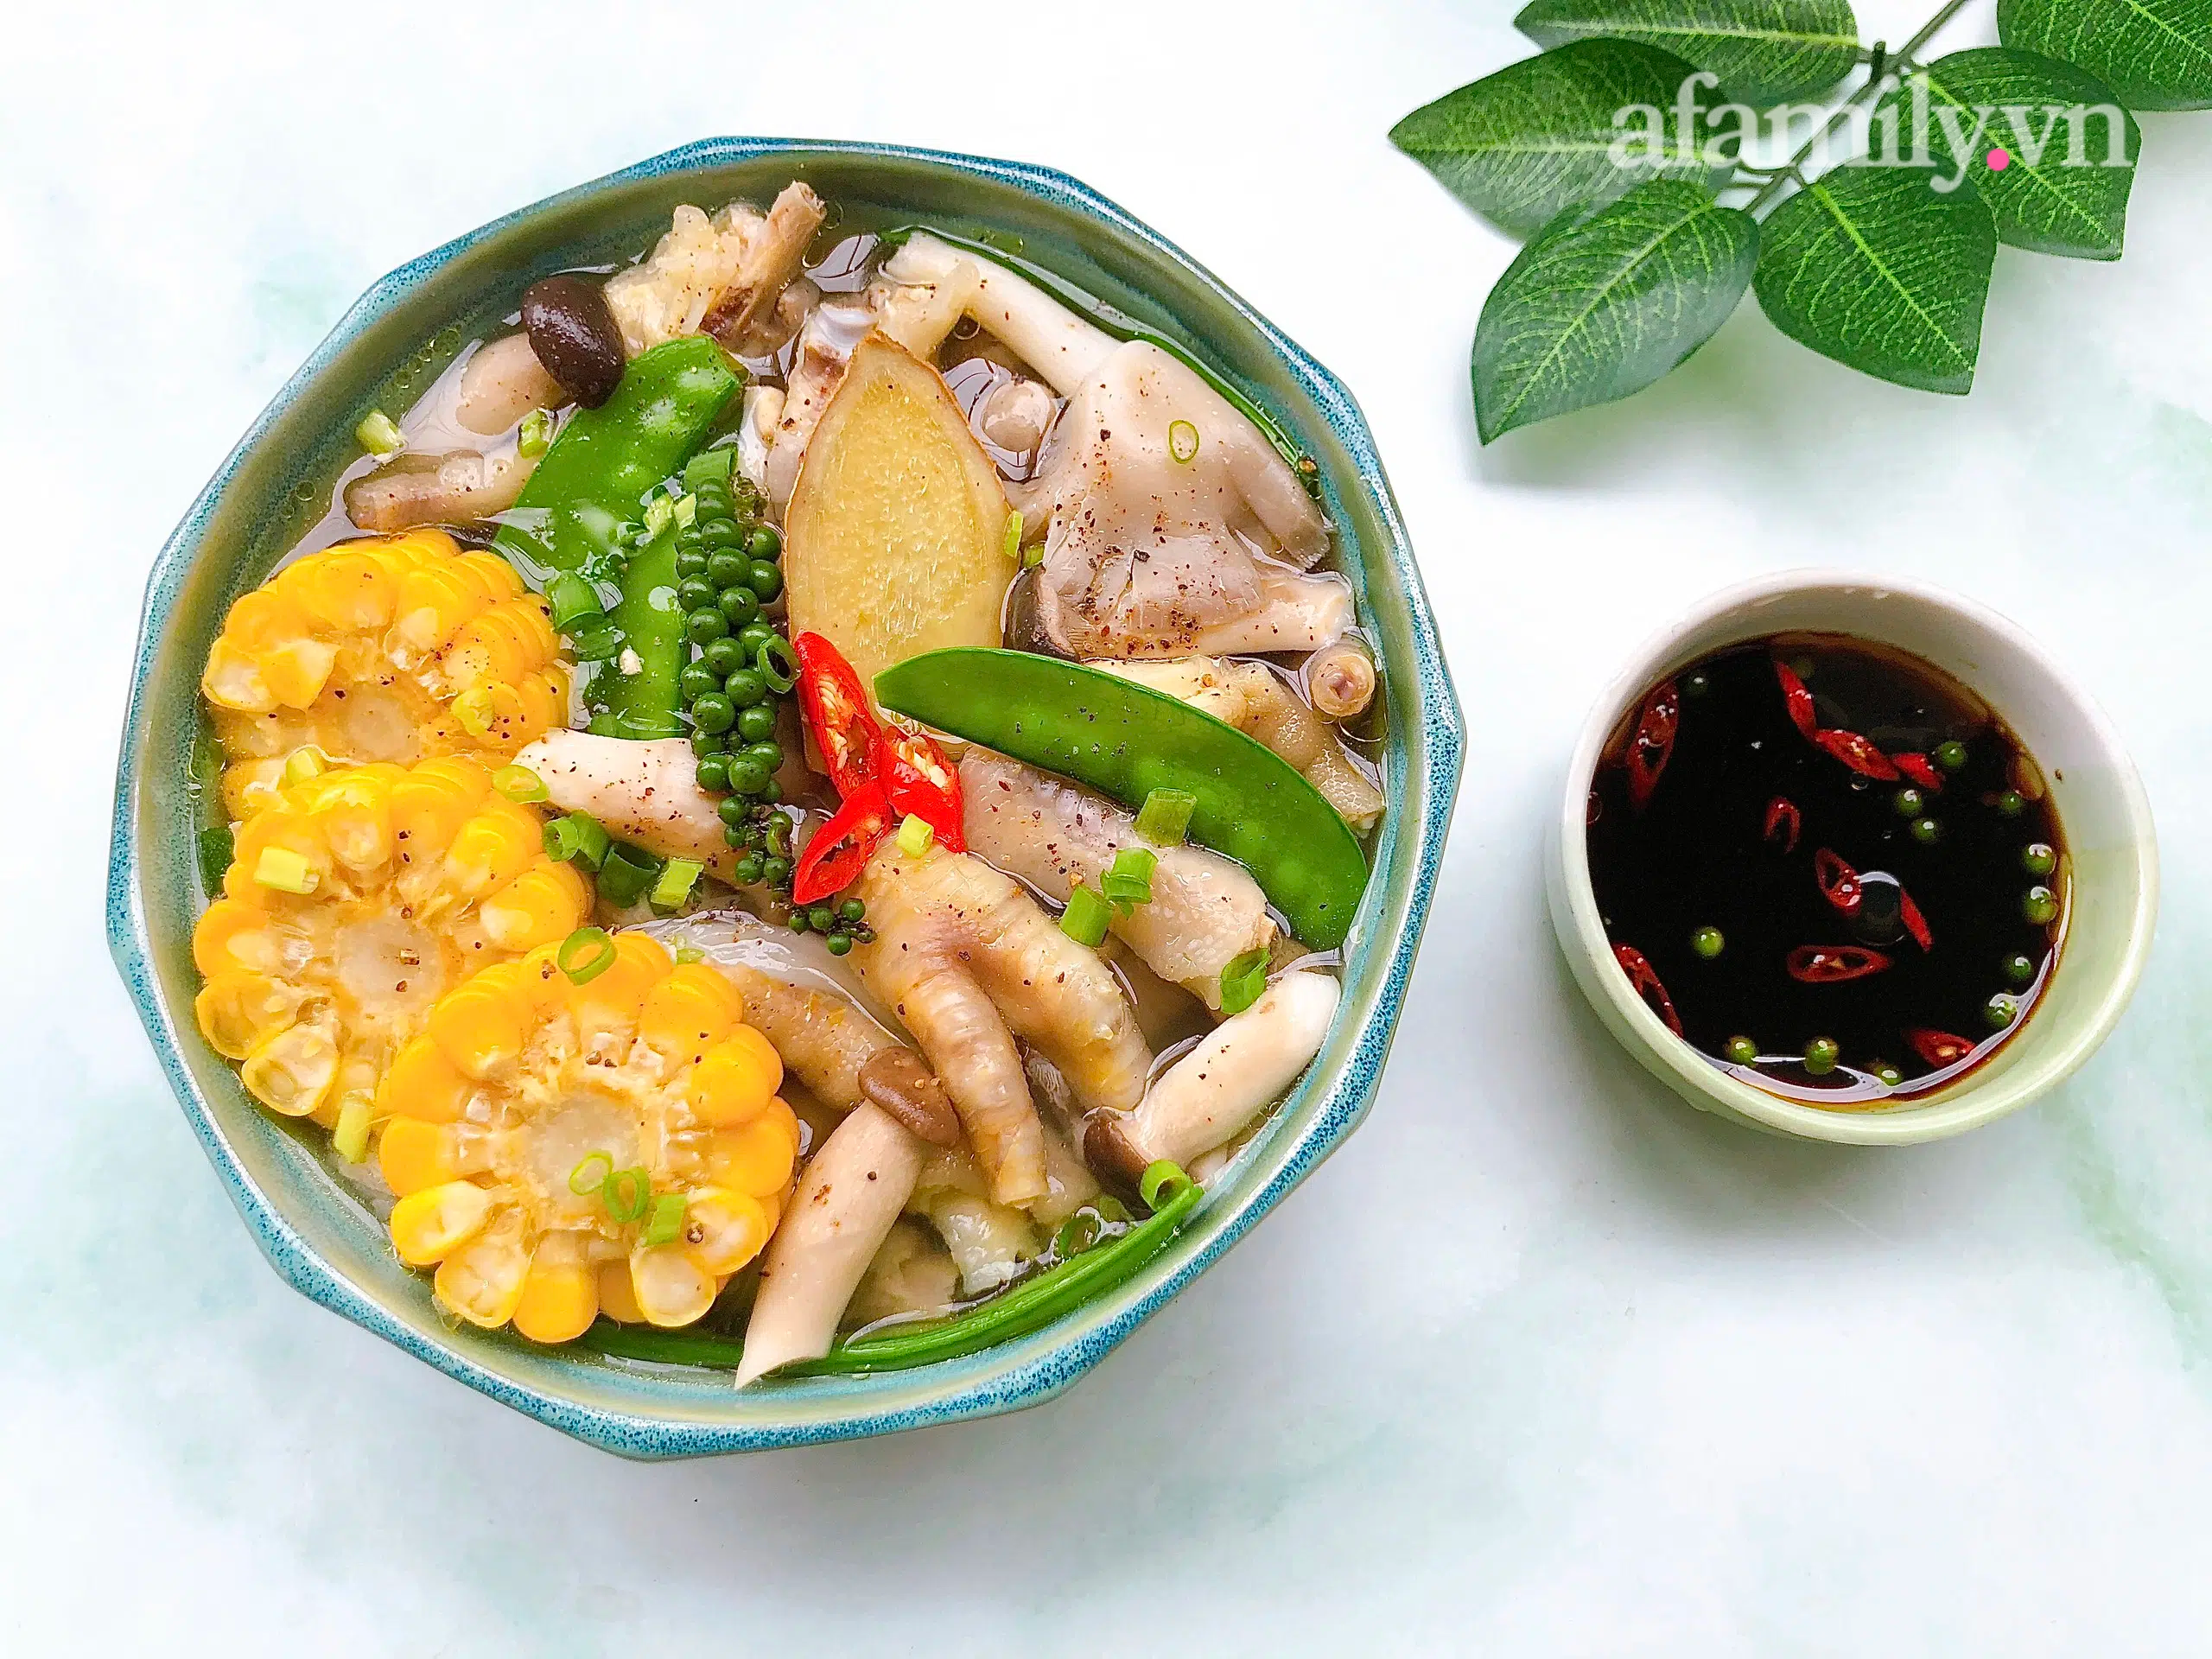 Canh chân gà rau củ là một món ăn vừa thơm ngon, vừa bổ dưỡng. Hãy xem hình ảnh để thấy được bữa cơm tinh tế với nhiều loại rau củ sắc màu kèm theo thịt gà thơm ngon. Đây chắc chắn sẽ là món ăn yêu thích của bạn.